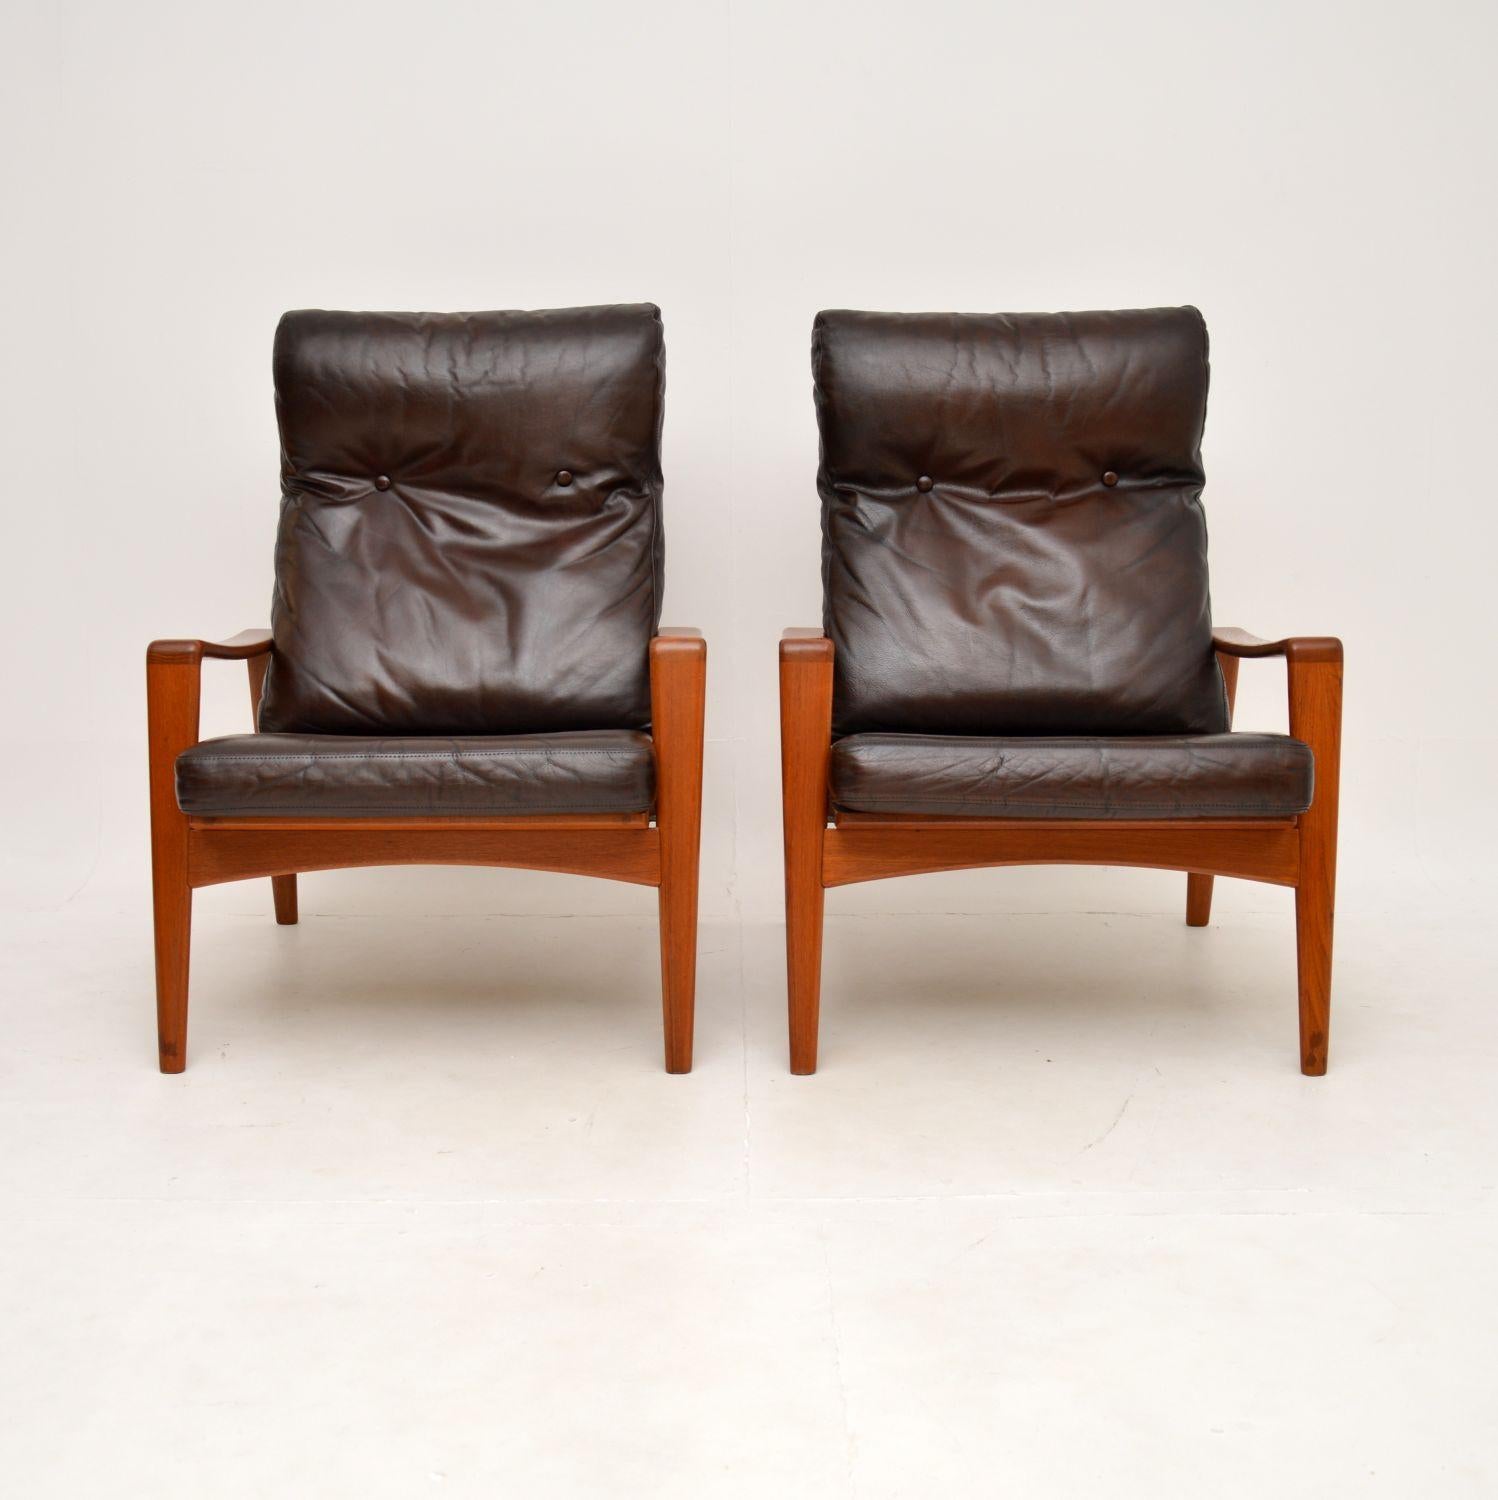 Ein stilvolles und äußerst bequemes Paar dänischer Vintage-Sessel aus Teakholz und Leder von Arne Wahl Iversen. Sie wurden in Dänemark von Komfort hergestellt und stammen aus den 1960er Jahren.

Die Qualität ist hervorragend, sie sind wunderschön